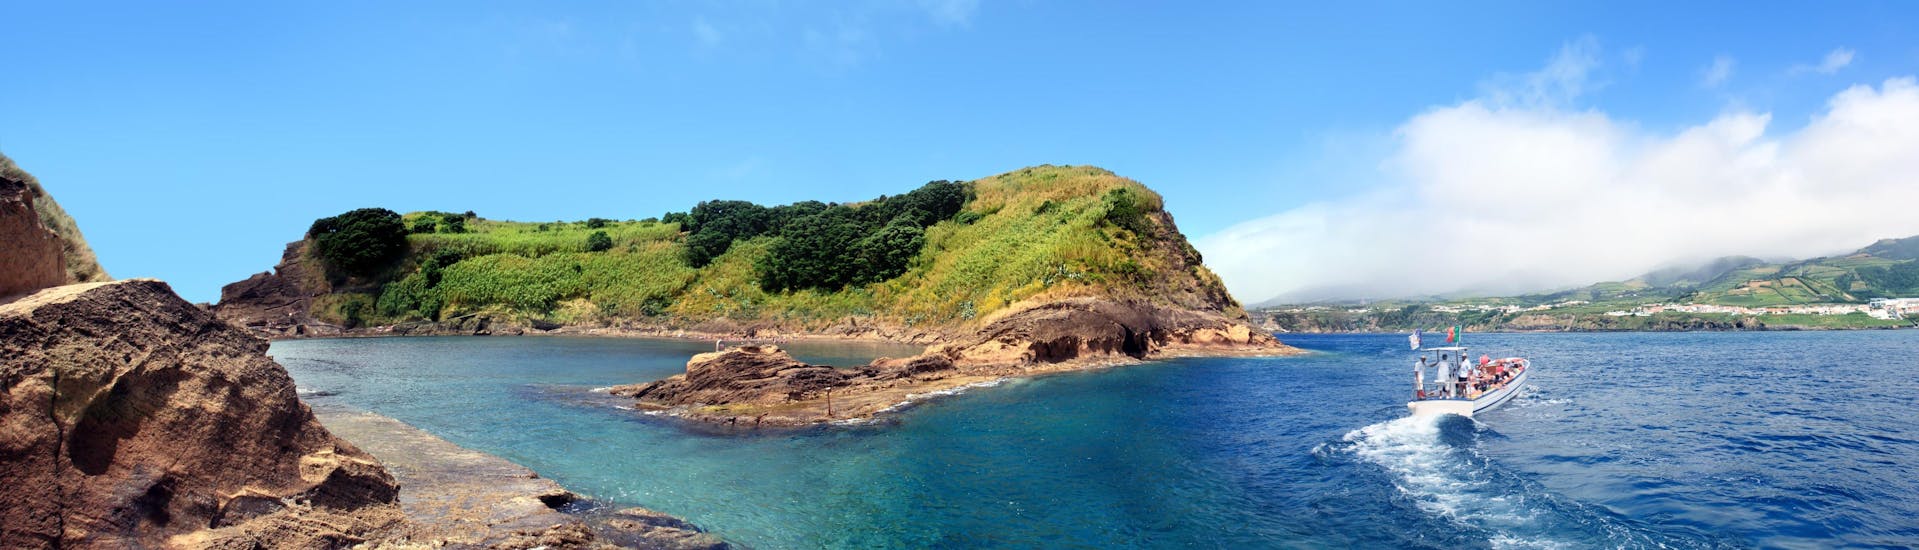 Vue de l'îlot de Vila Franca do Campo, une destination populaire pour les excursions en bateau aux Açores.